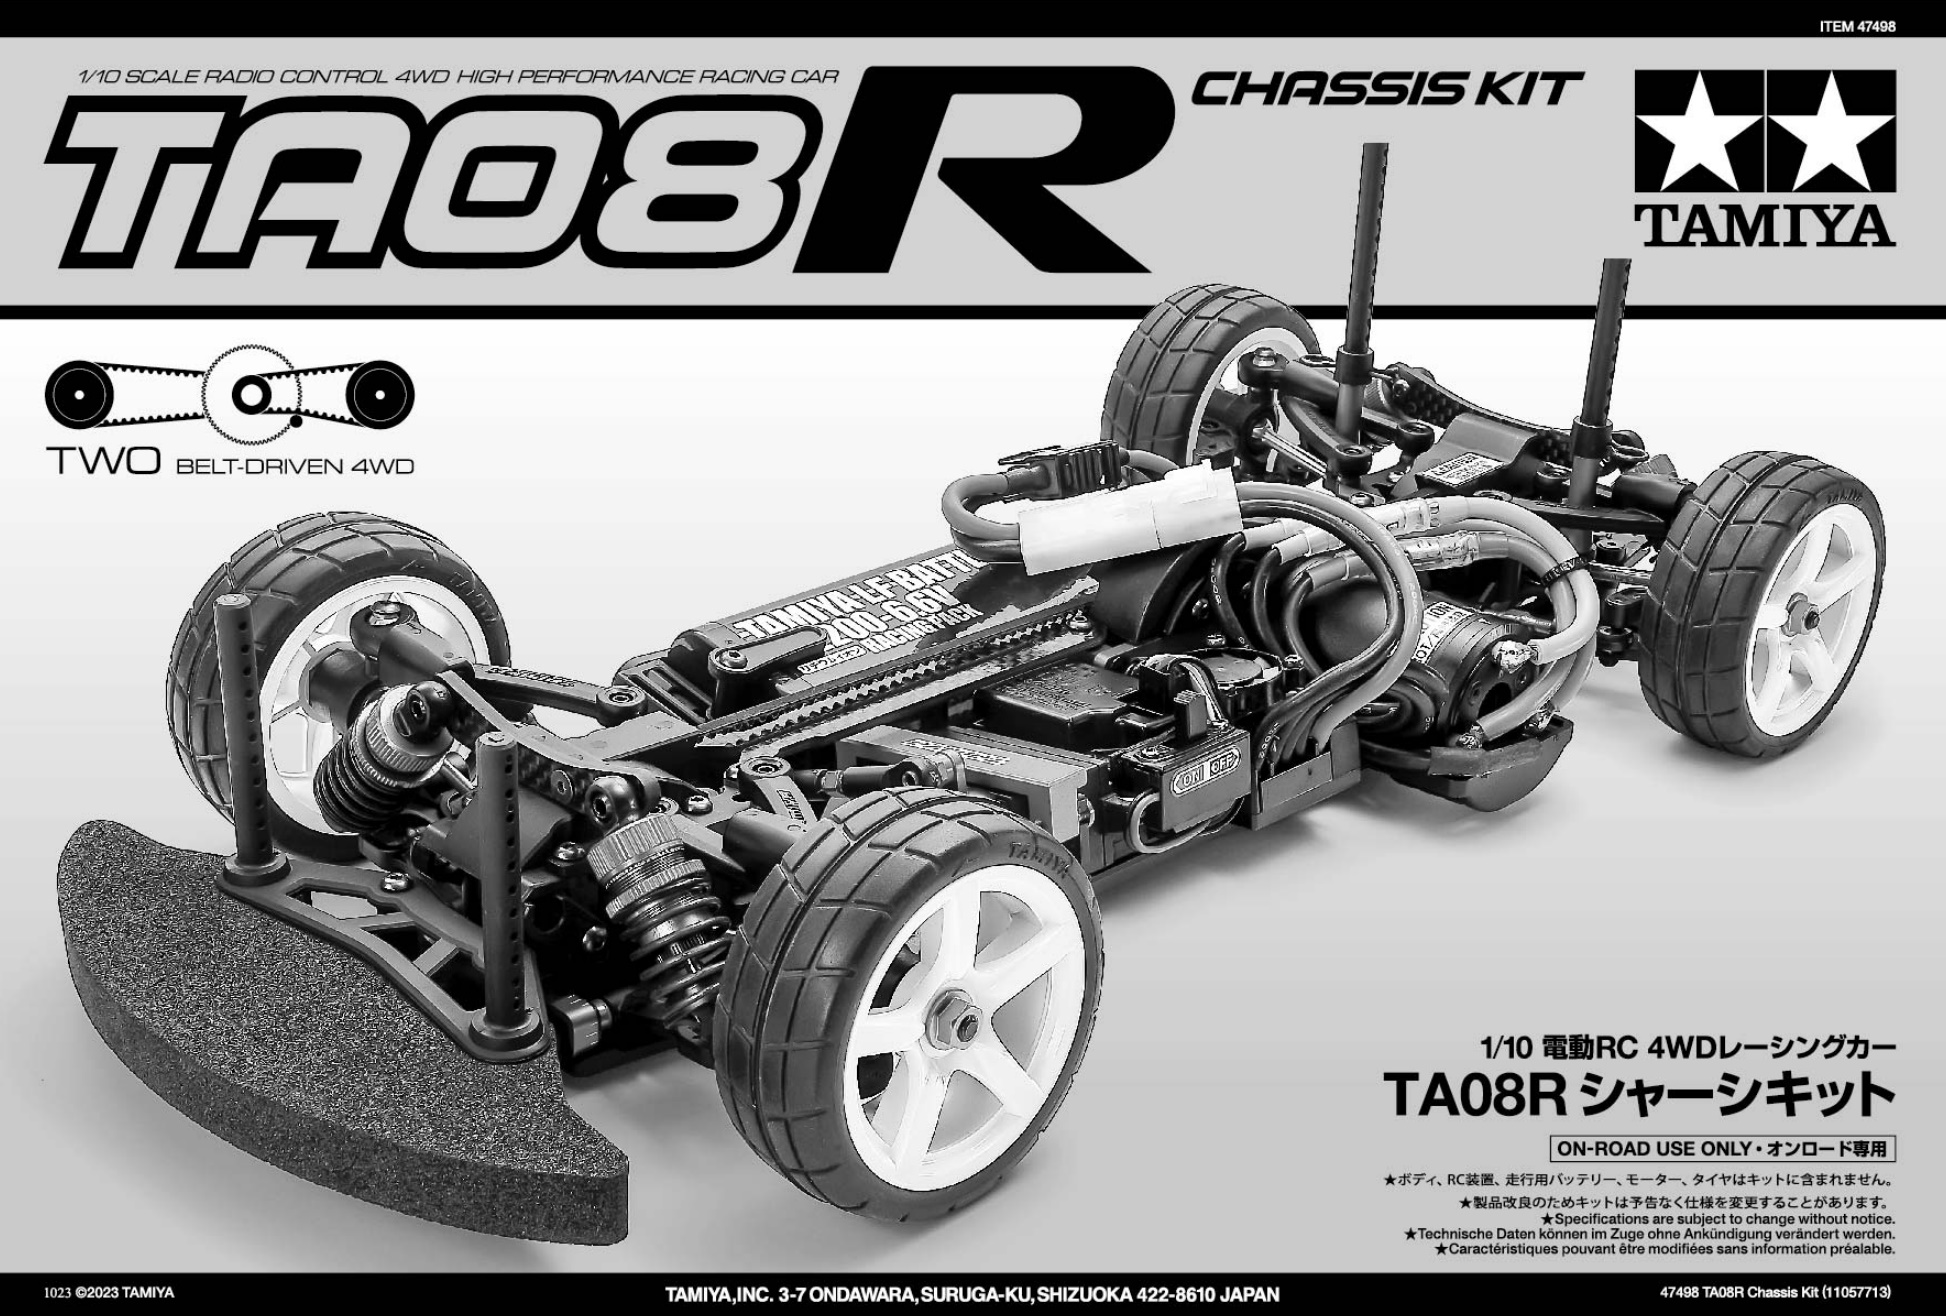 Assembly manual of Tamiya 47498 TA08R chassis kit - TamiyaBlog